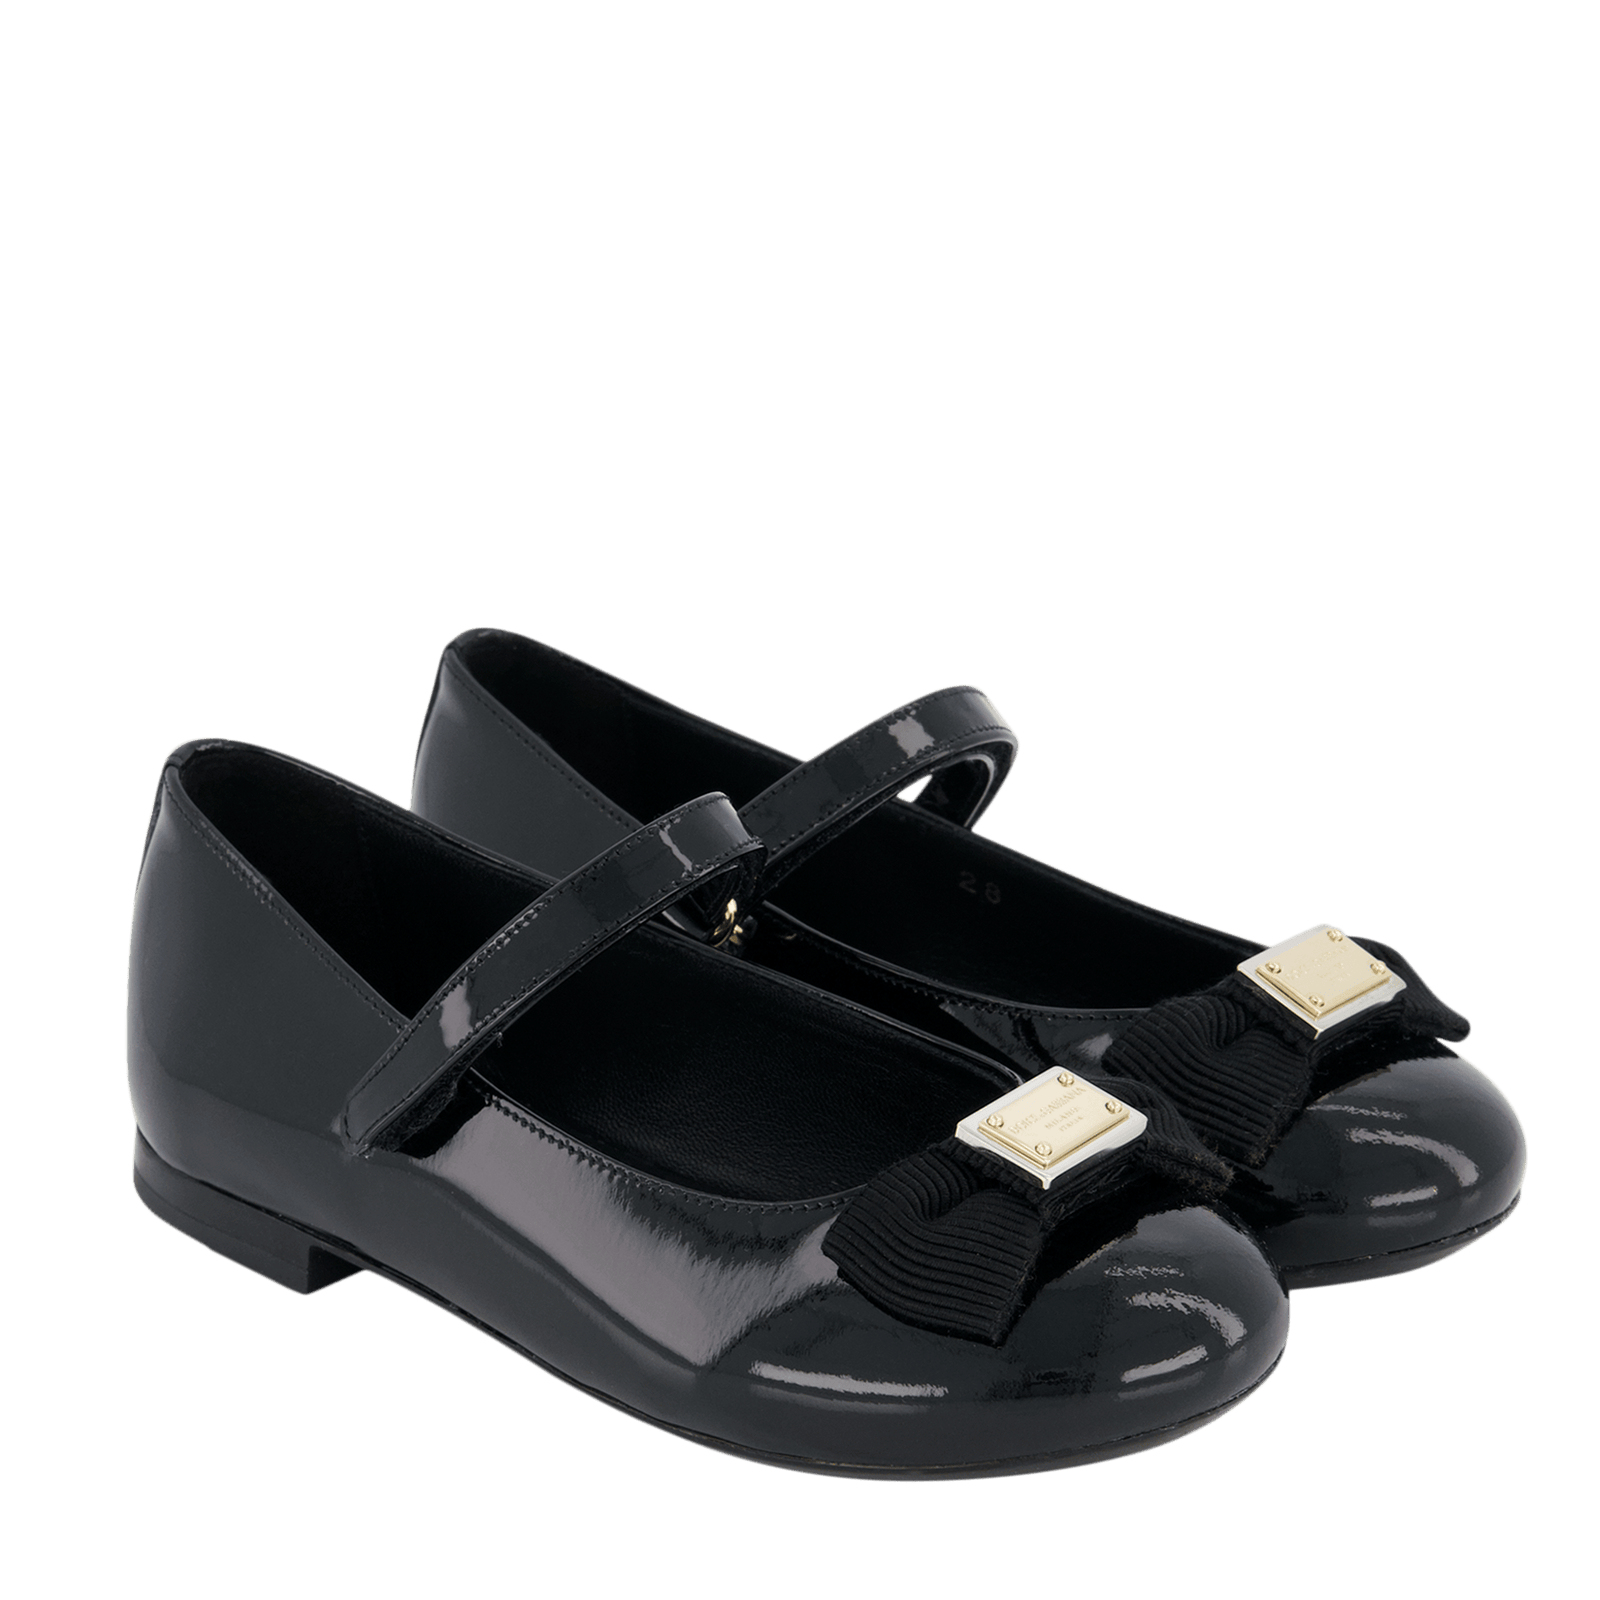 Dolce & Gabbana Kinder Meisjes Schoenen Zwart